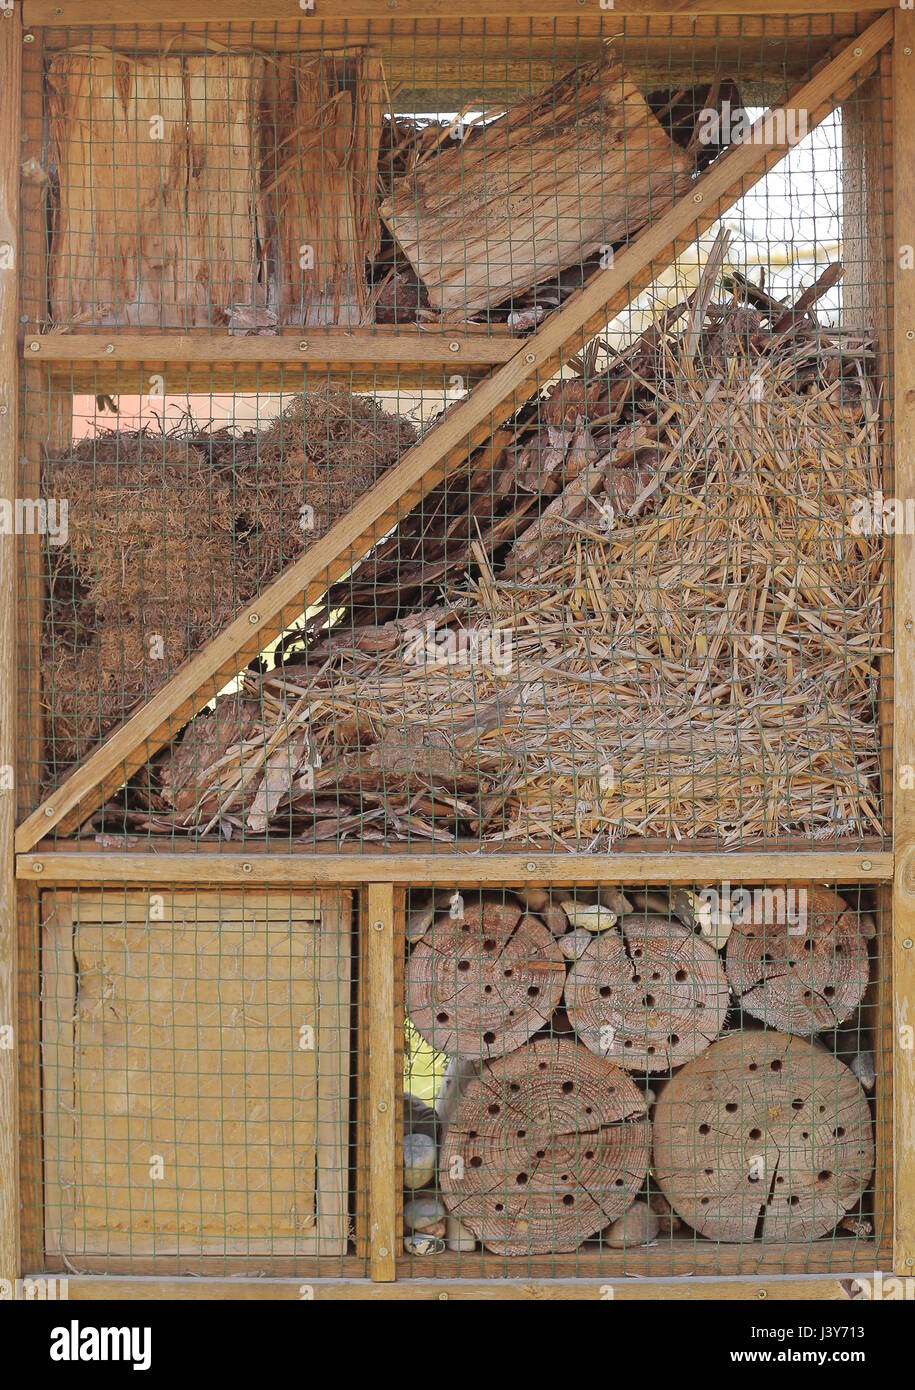 Hôtel des insectes avec divers matériaux offrant un abri pour les insectes. Banque D'Images